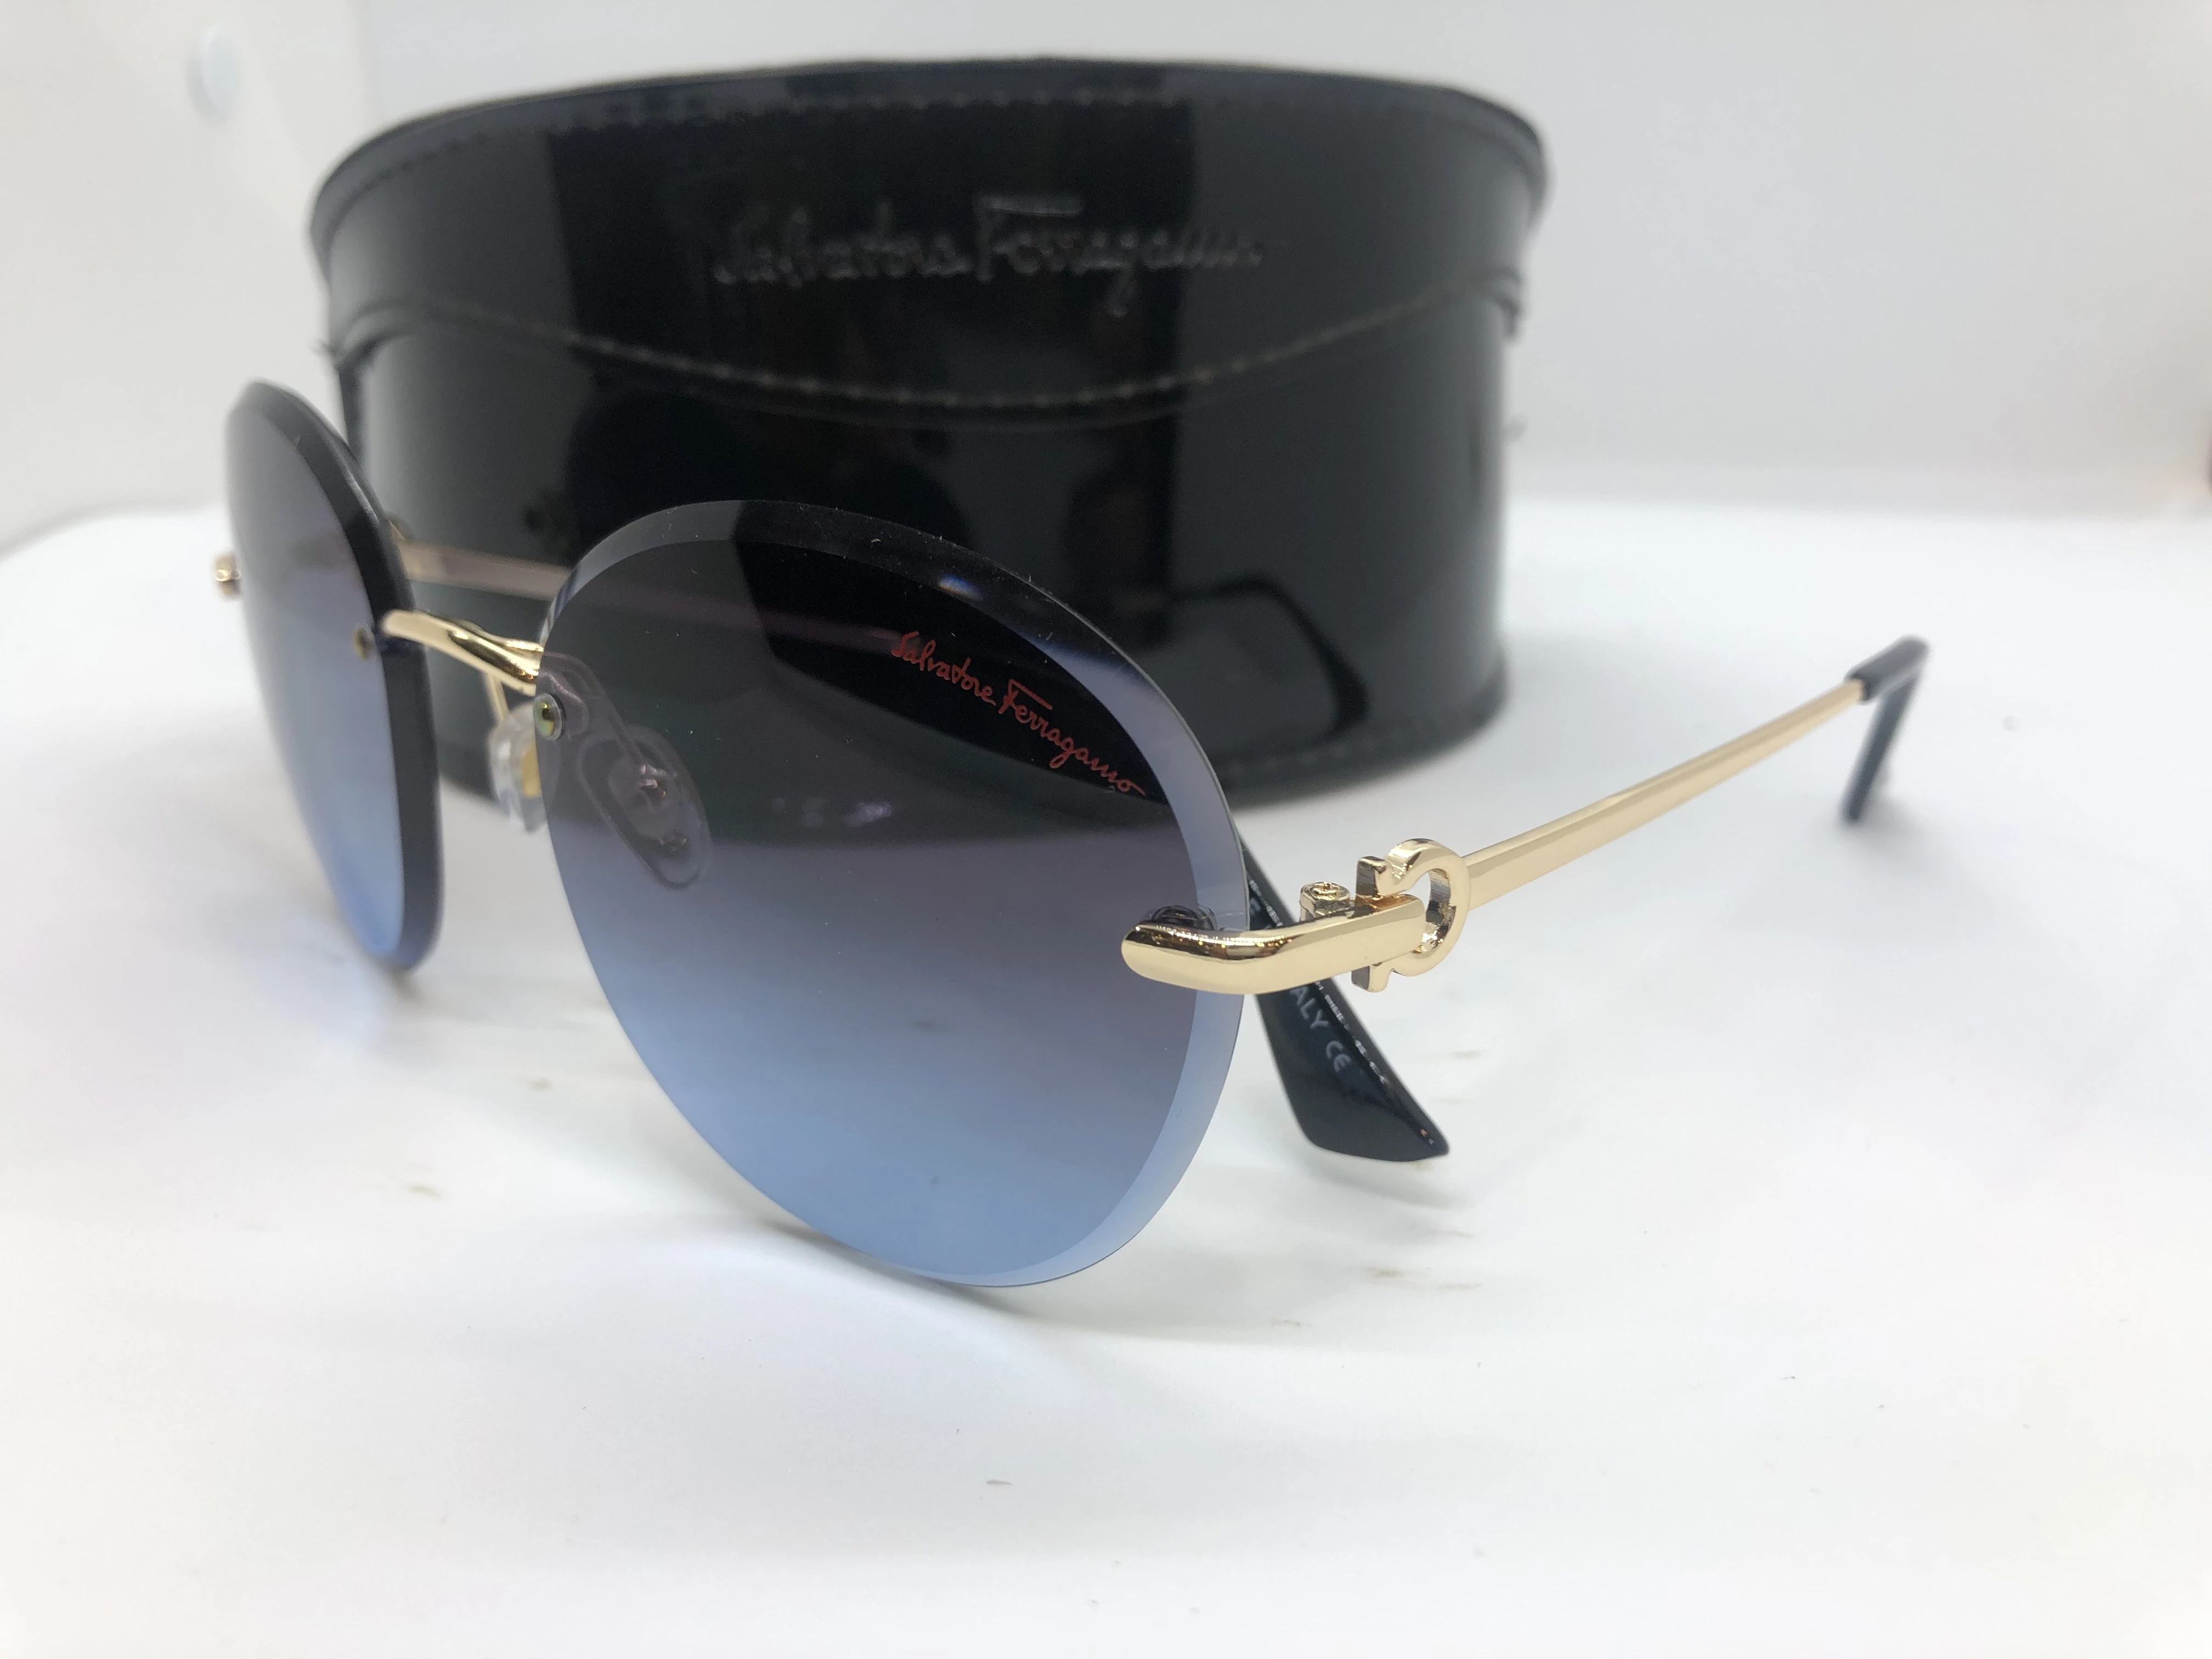 نظارة شمسية - من سلفاتوري فيراغامو- بدون اطار - وعدسات كحلي - وزراع معدن ذهبي - حريمي